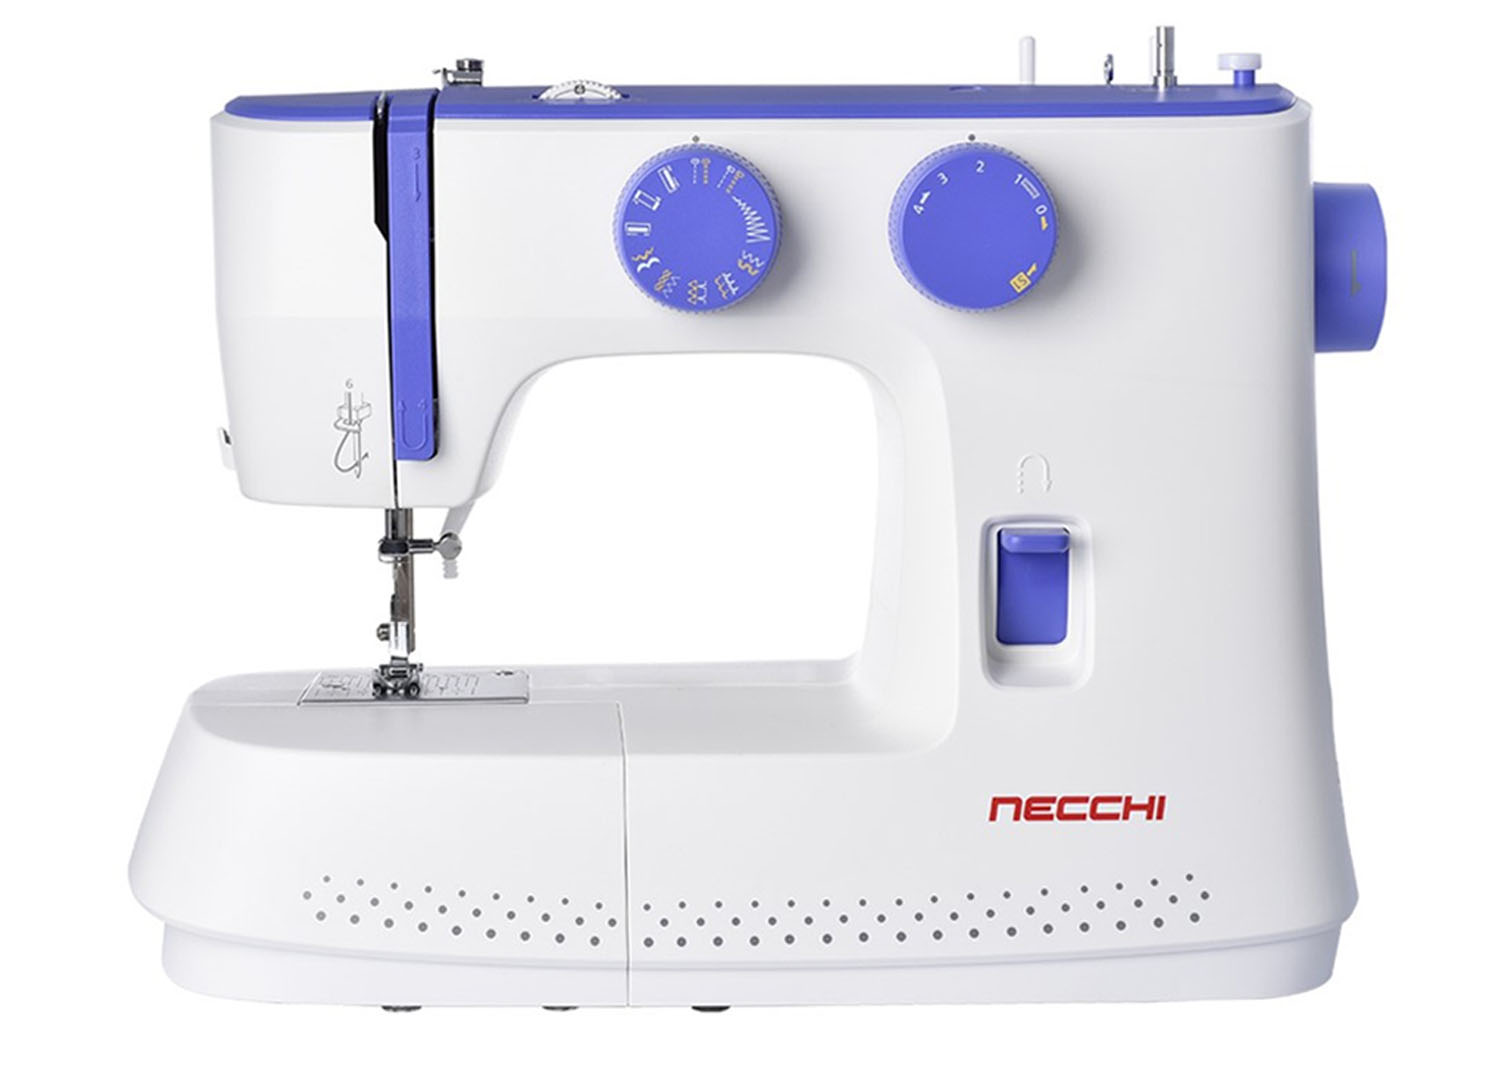 Macchine per cucire - Necchi K417A - Necchi Shop Online